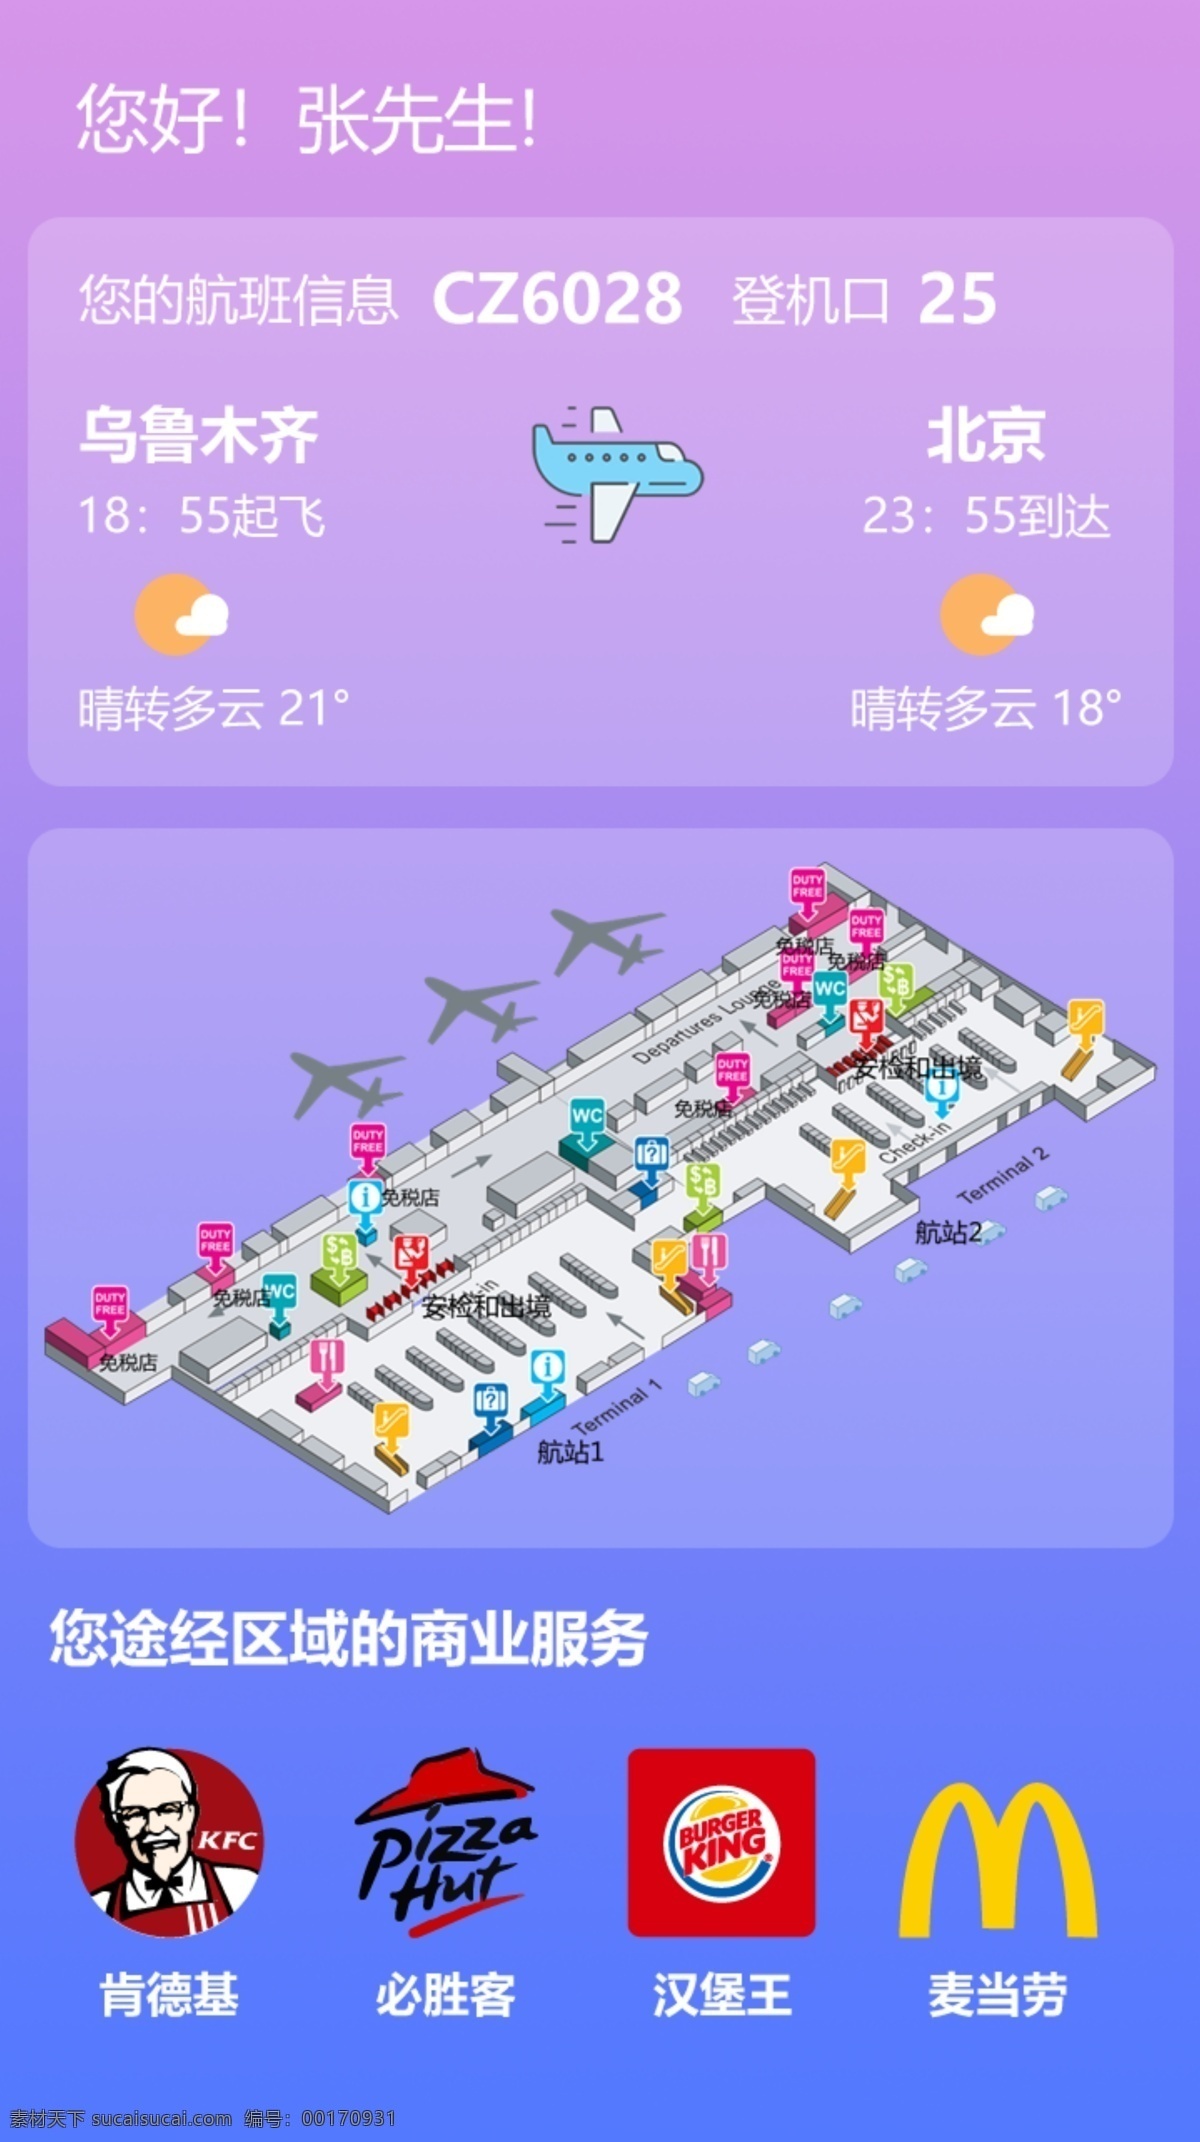 航显app 航显 机场 ui 智慧机场 智慧航显 移动界面设计 手机界面